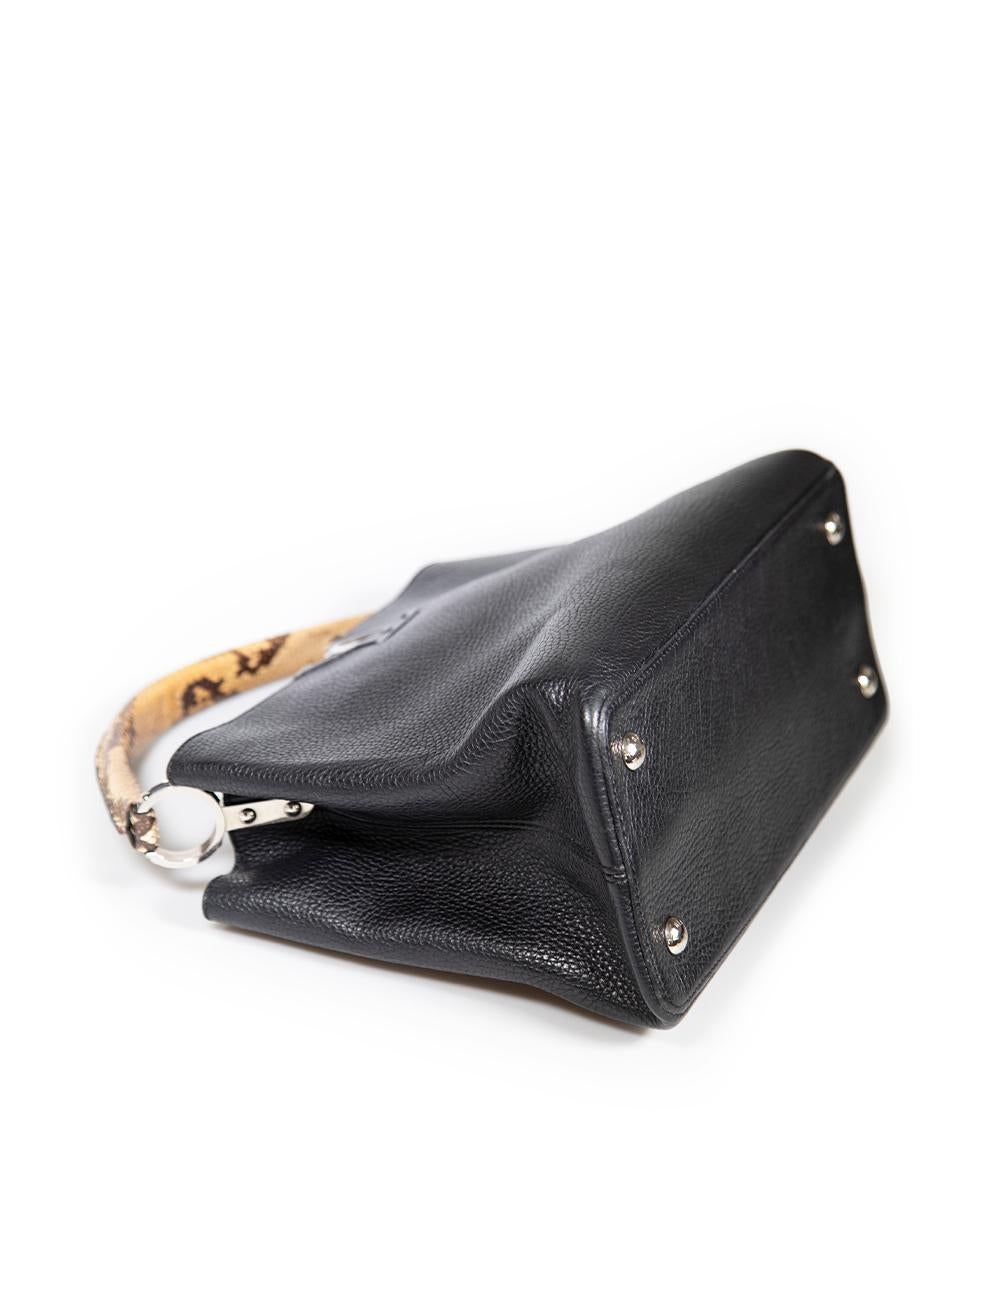 Louis Vuitton 2014 Black Leather Taurillon Python Capucines MM For Sale 3